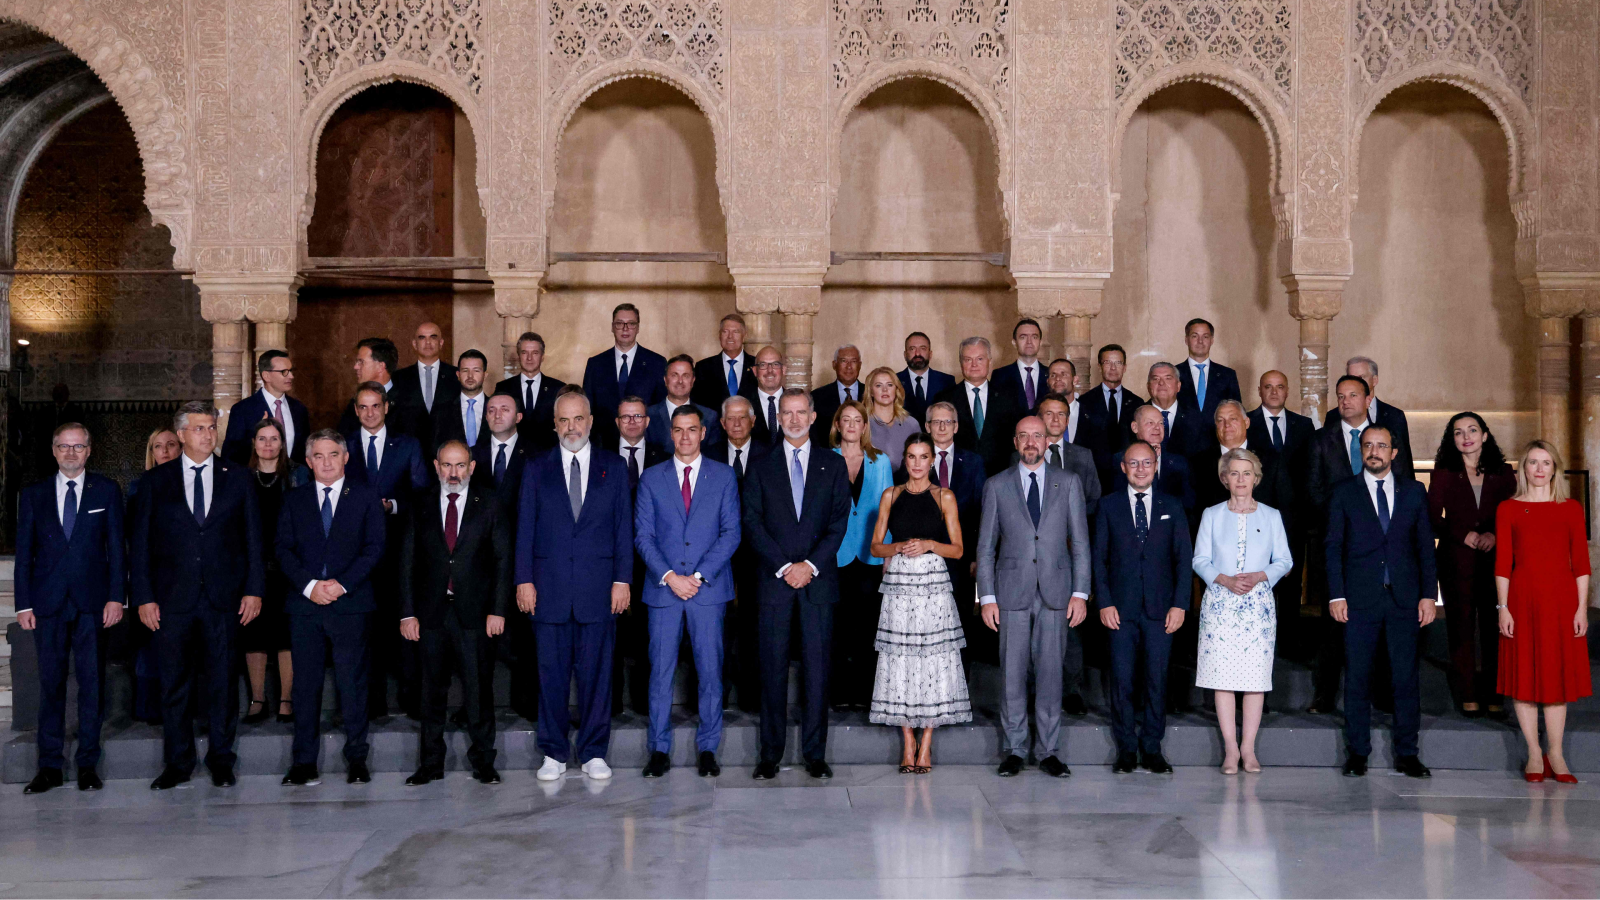 Los líderes europeos posan para una foto de grupo en el Patio de los Leones tras una visita a la Alhambra